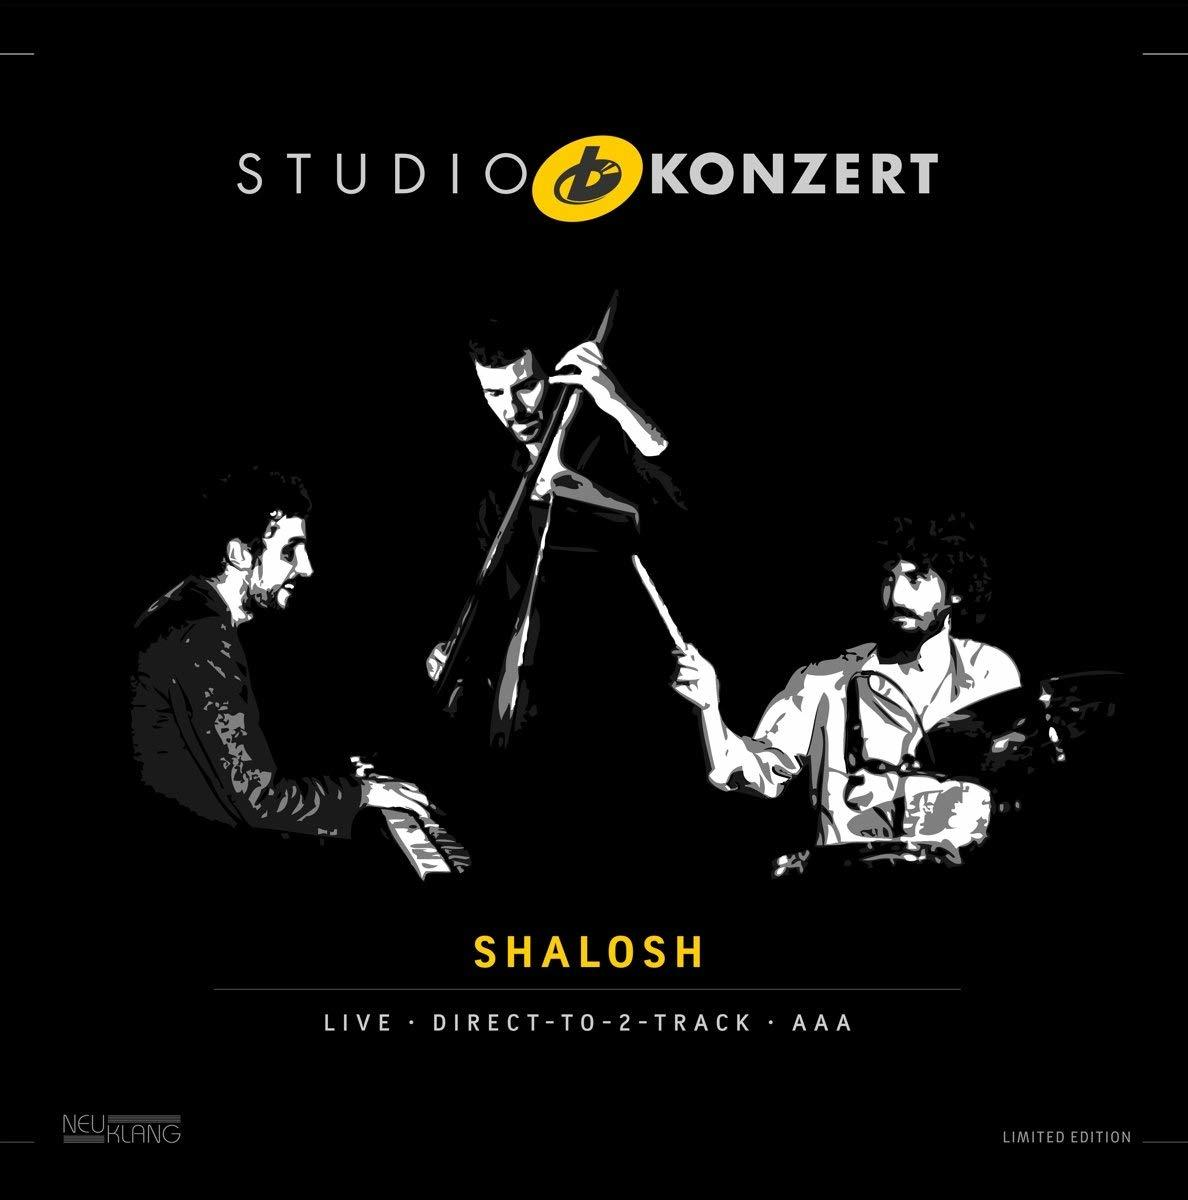 (Vinyl) Vinyl Limited Studio Konzert Edition] [180g Shalosh - -